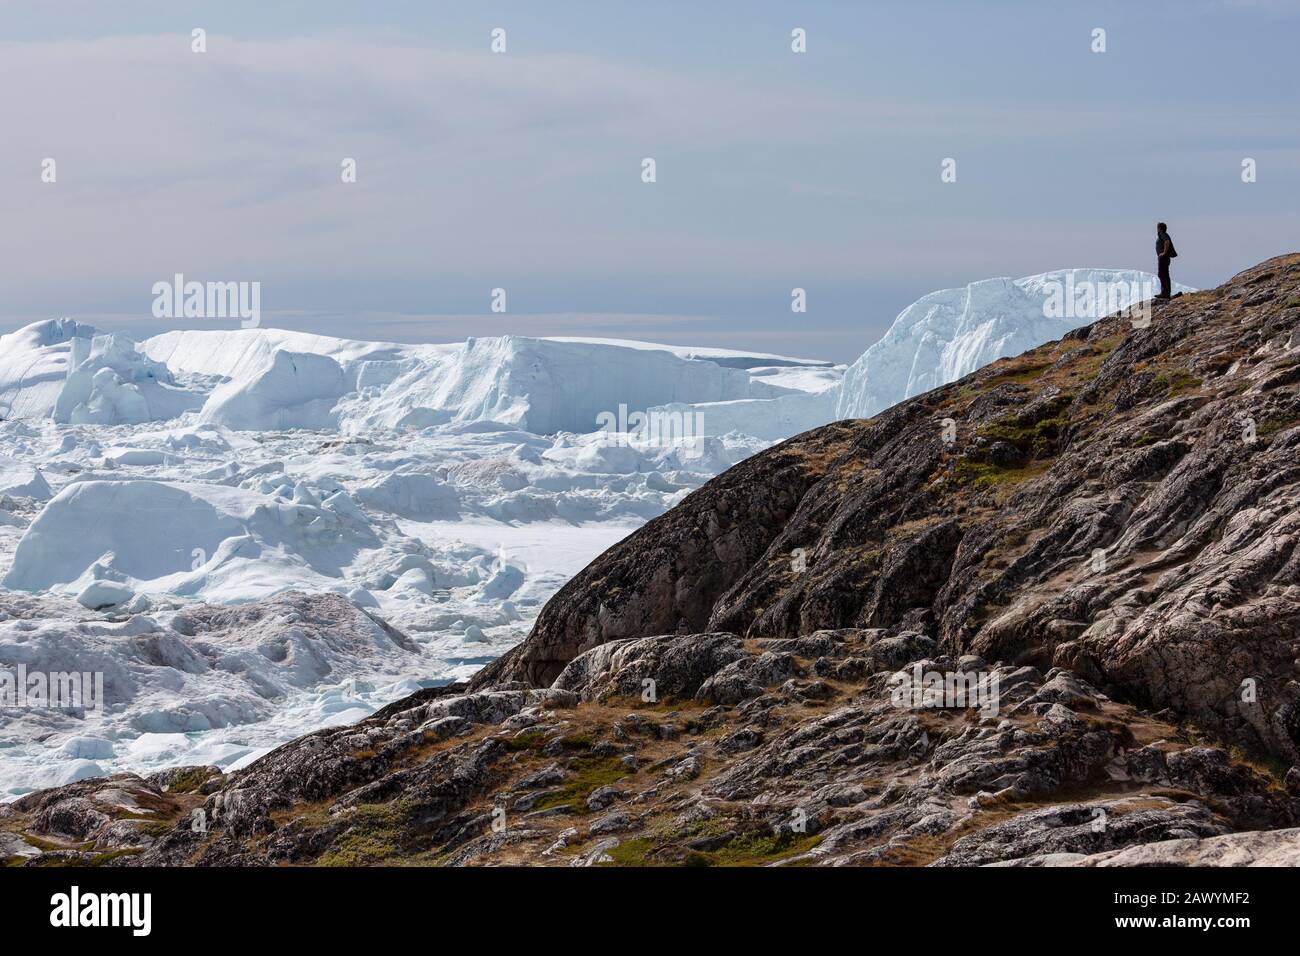 Homme sur des rochers regardant les icebergs polaires Groenland Banque D'Images